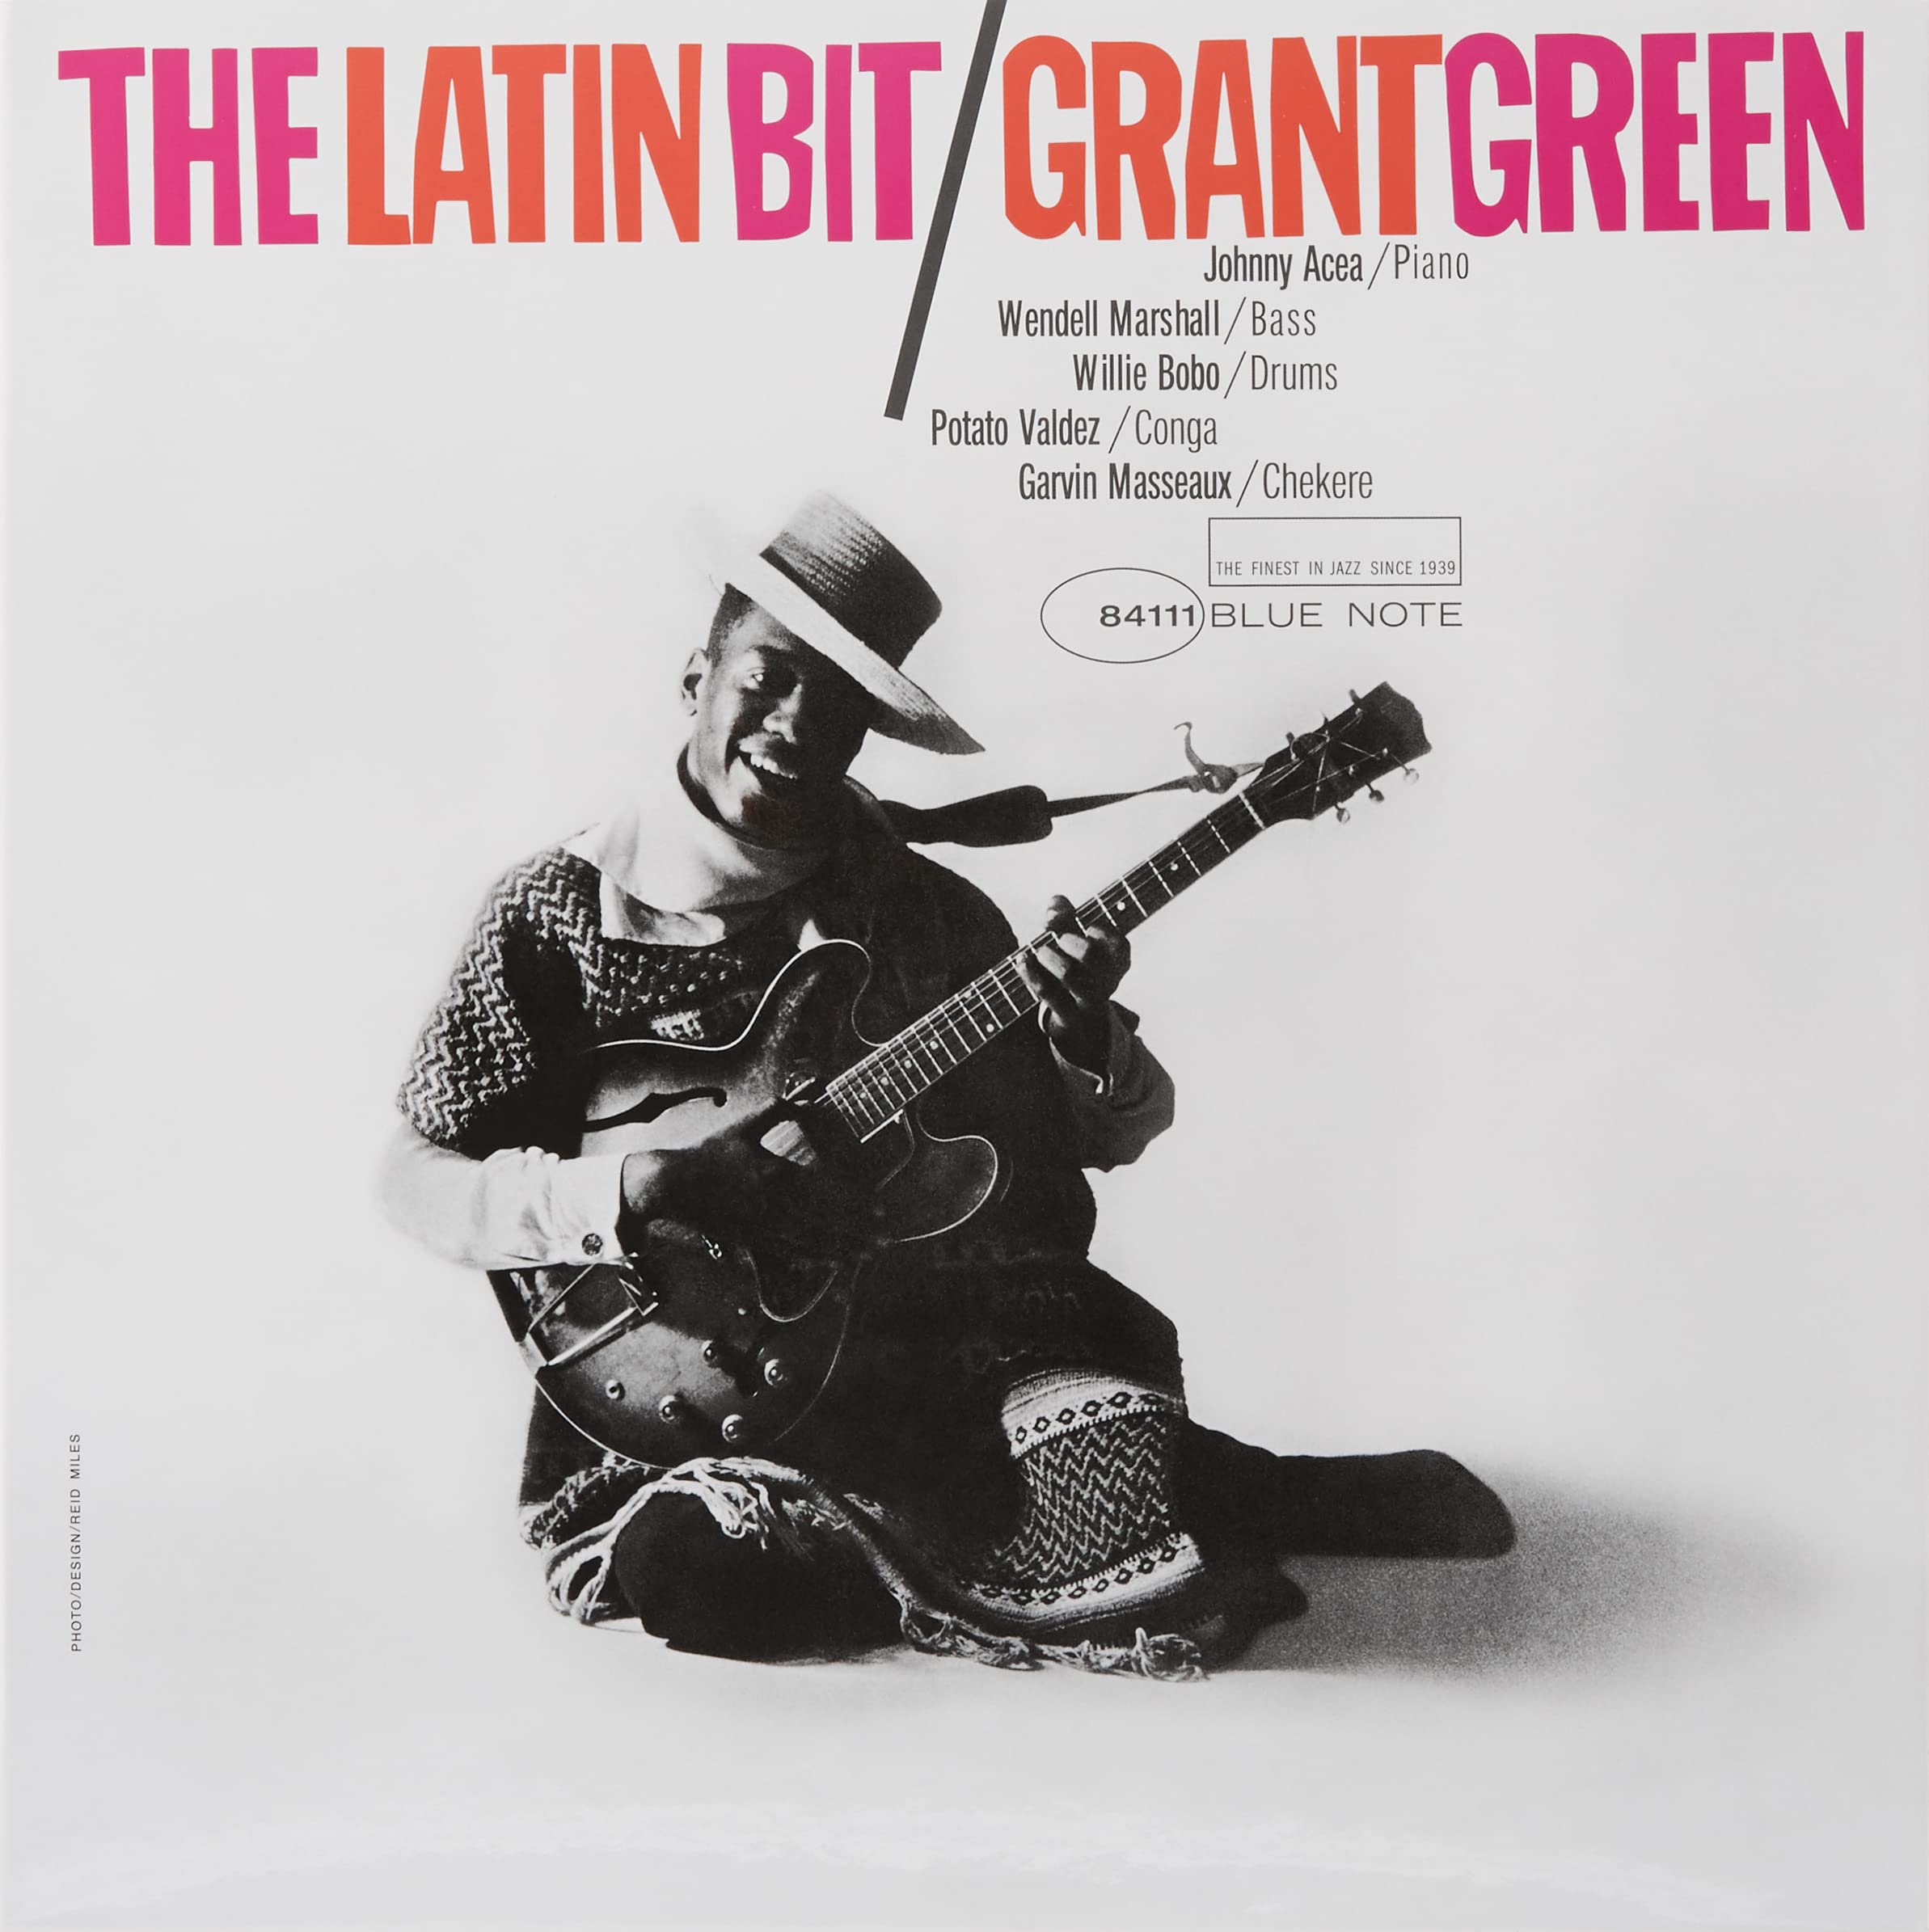 The Latin Bit (Tone Poet Vinyl) [Vinyl LP]